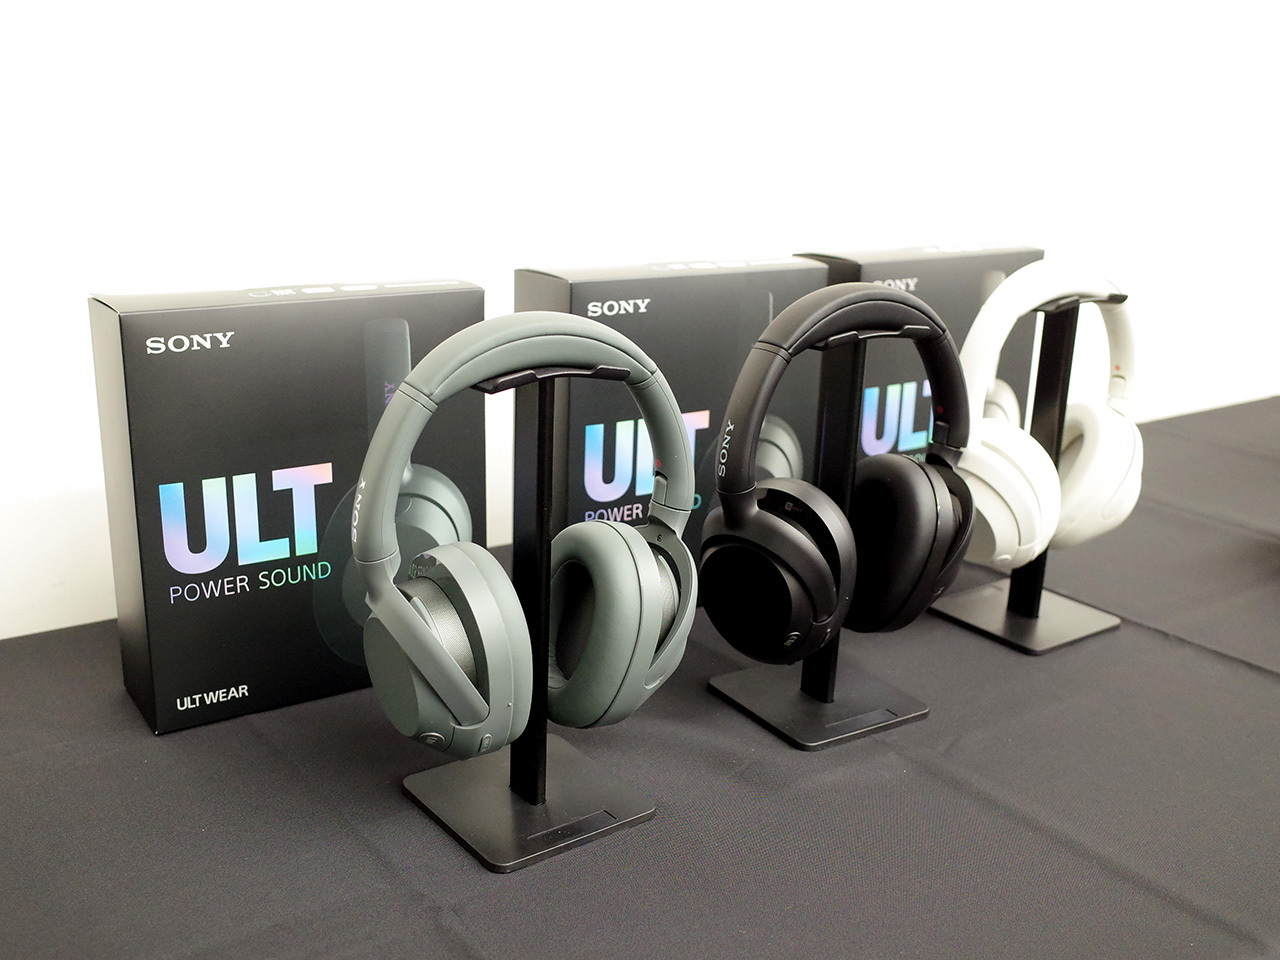 新「ULT POWER SOUND」シリーズとしてワイヤレスヘッドホンやスピーカーを発表した